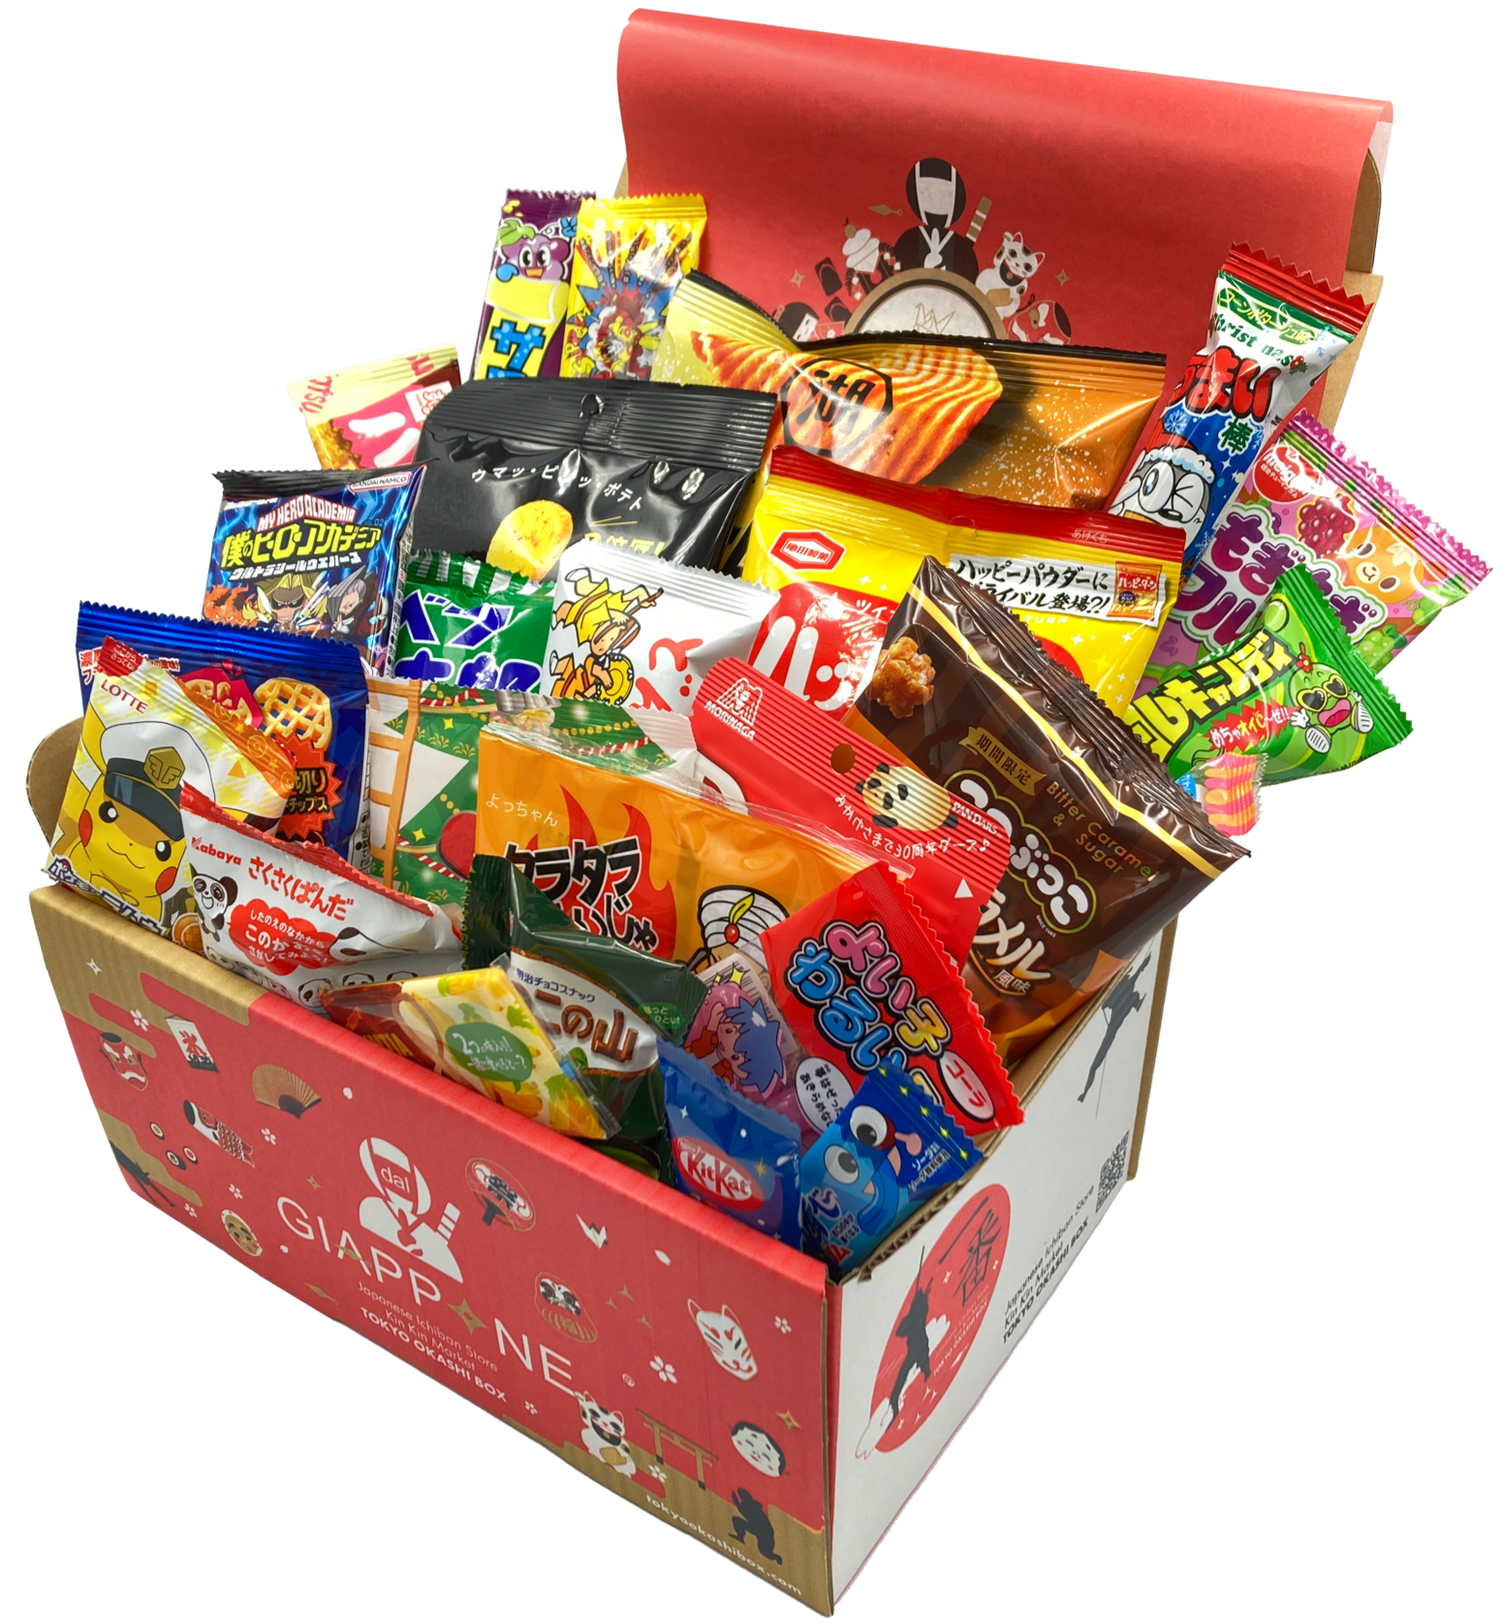 UmaiBox - Box mensile di dolci e snacks giapponesi!